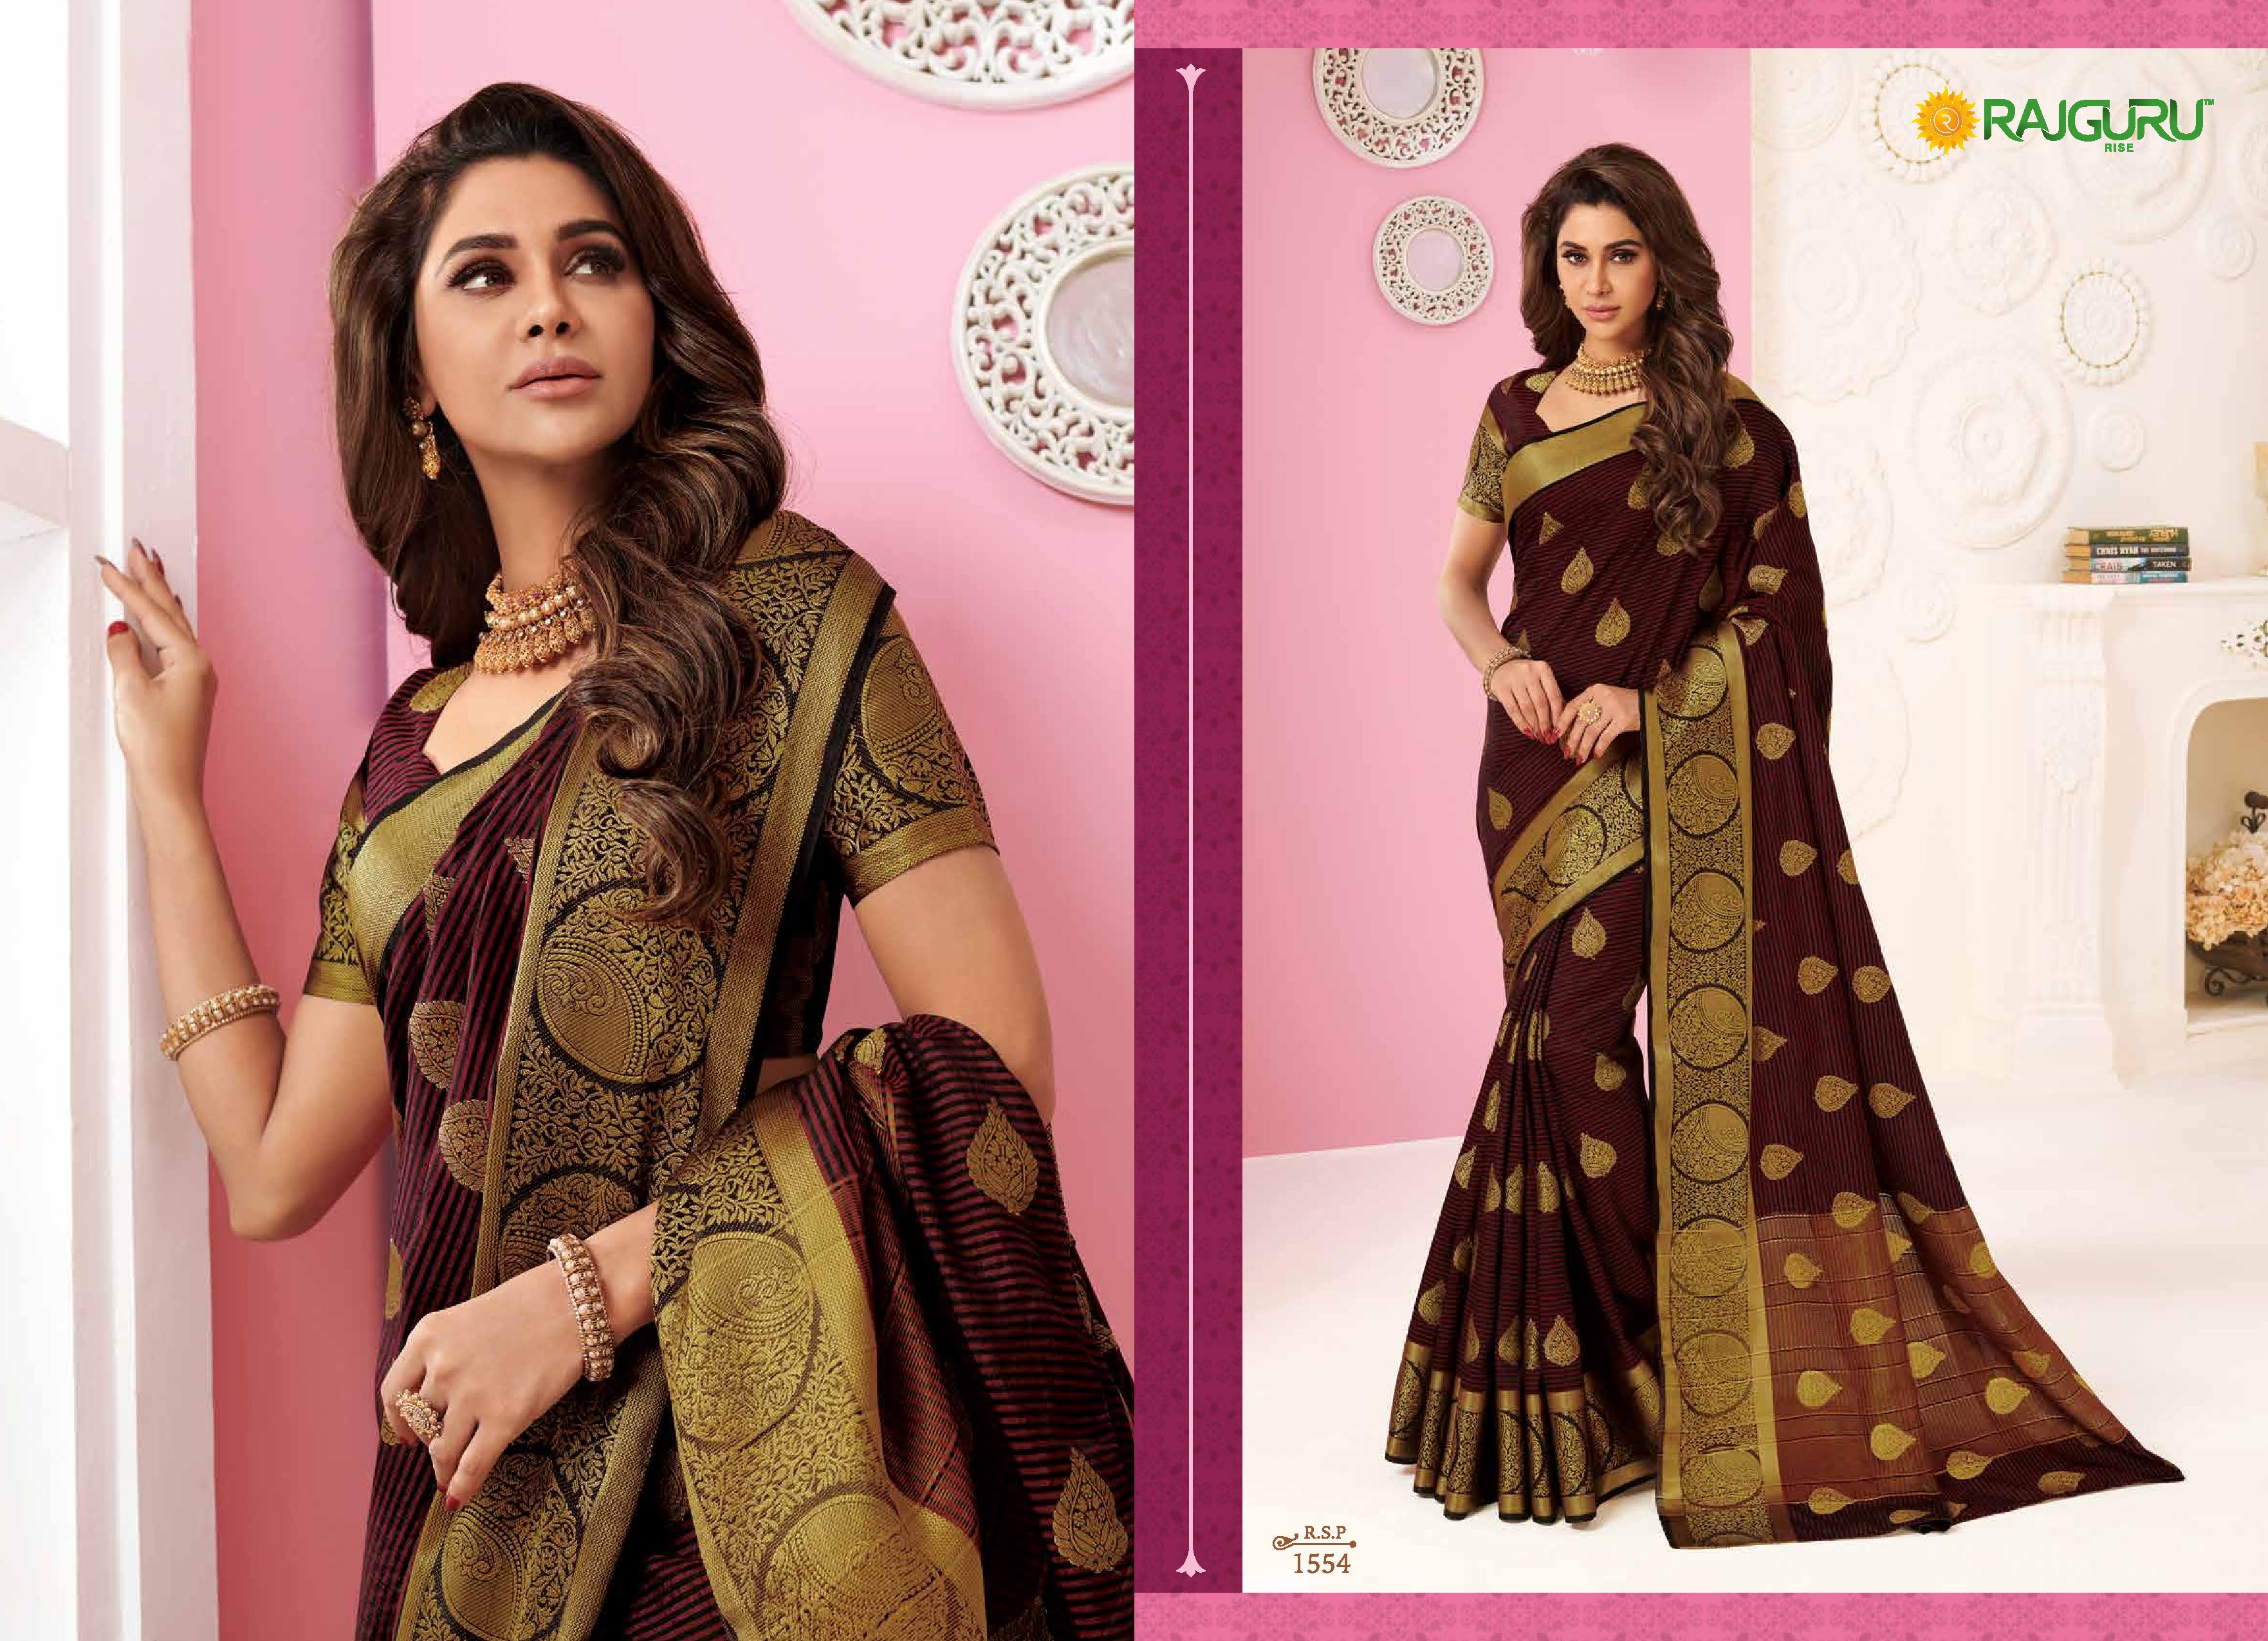 Rajguru Presents Heena Pink Beautiful Designer Silk Sarees Catalog Wholesaler